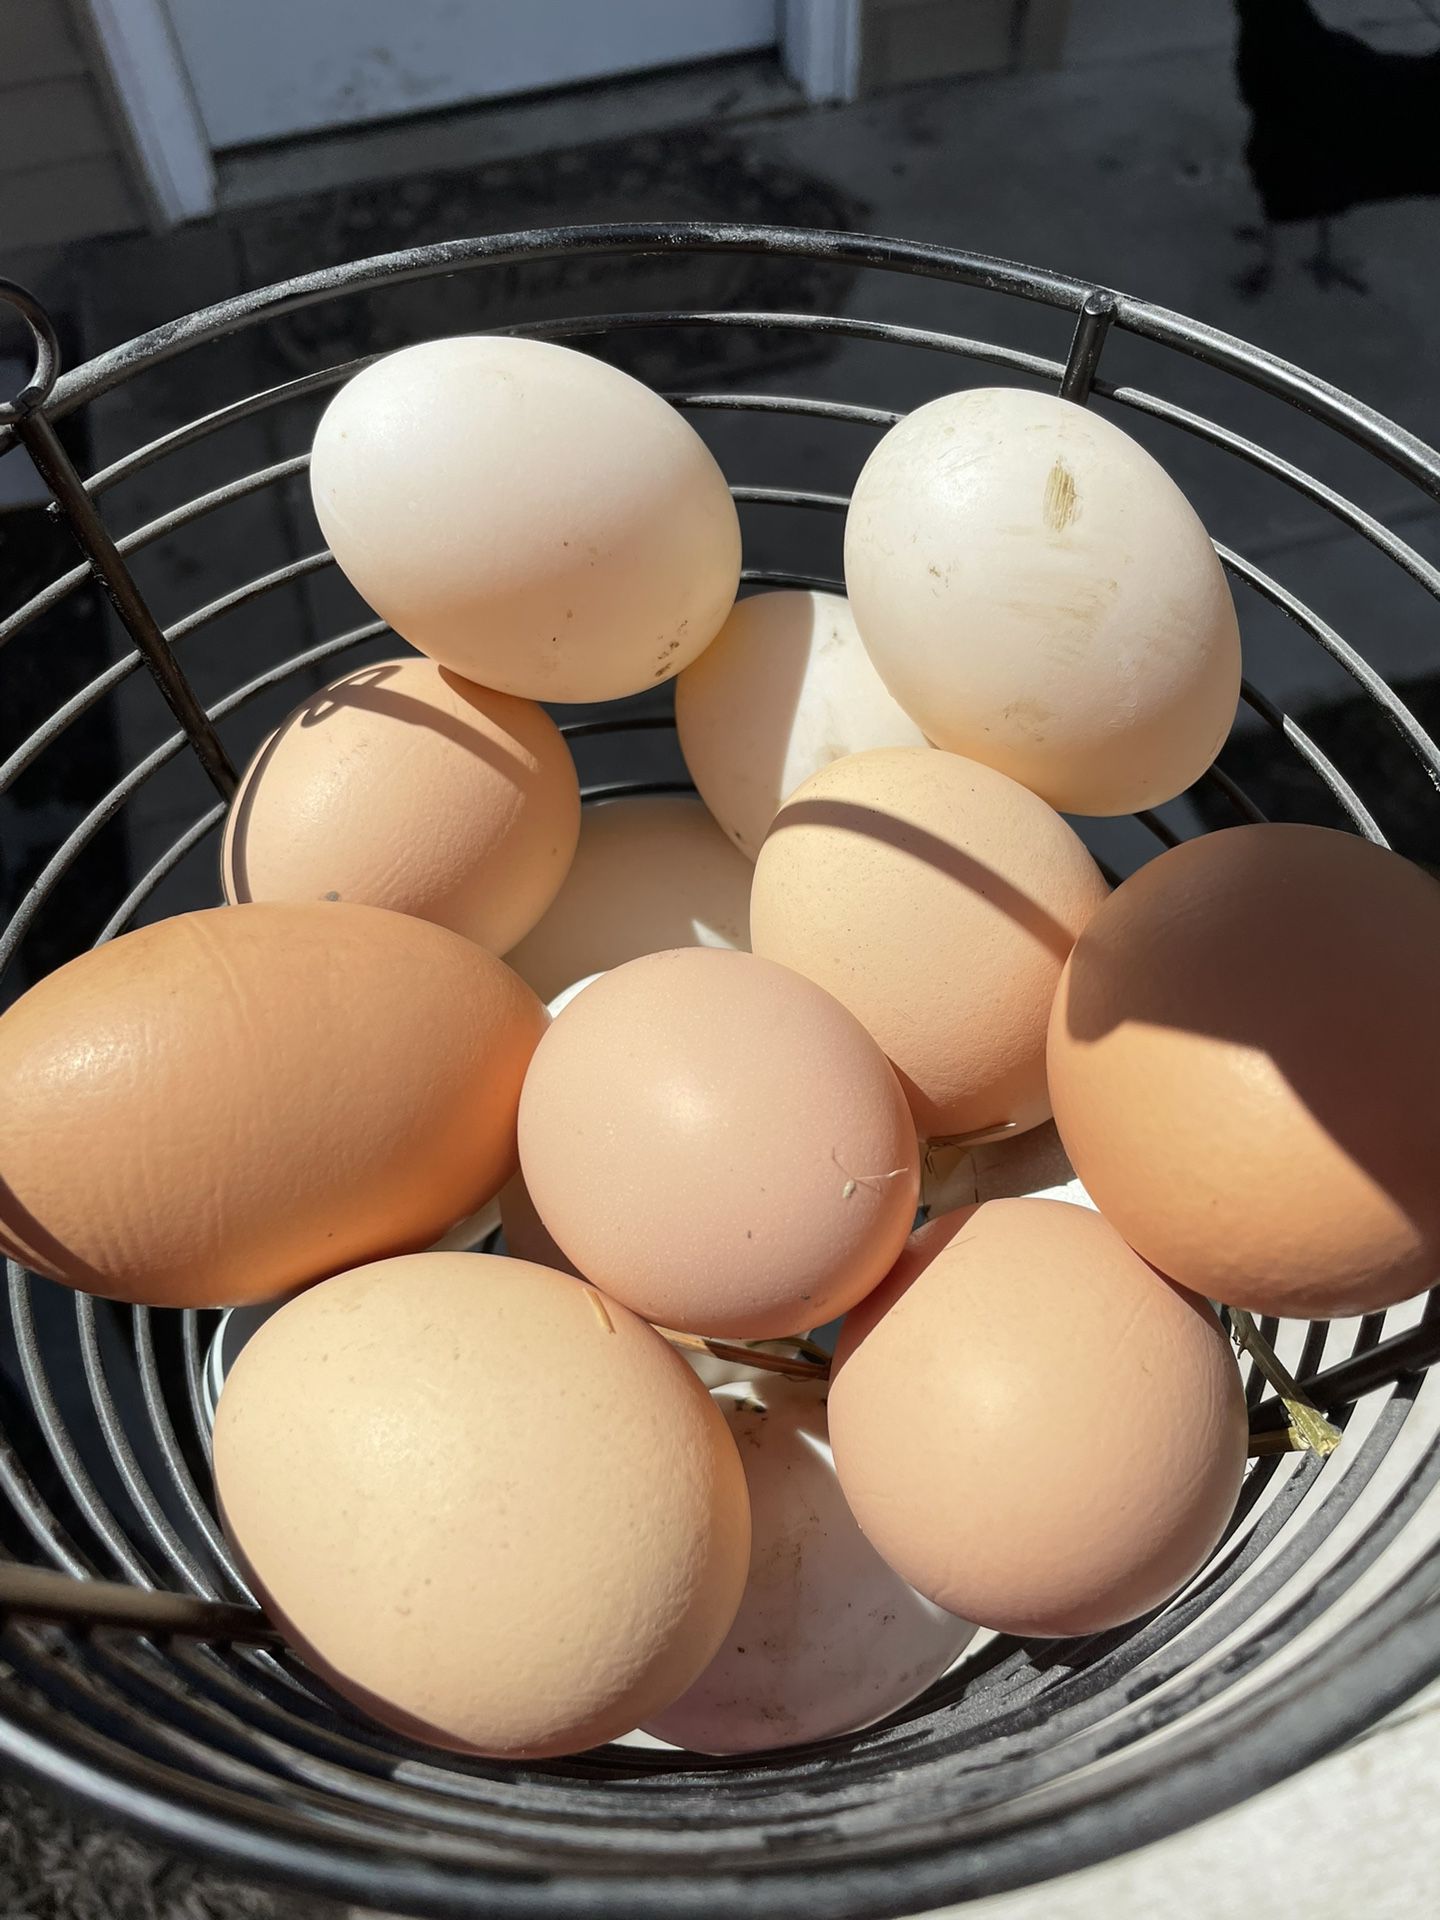 Fresh Chickens Eggs For Sale $5 A Dozen , Duck Eggs $8 A Dozen 